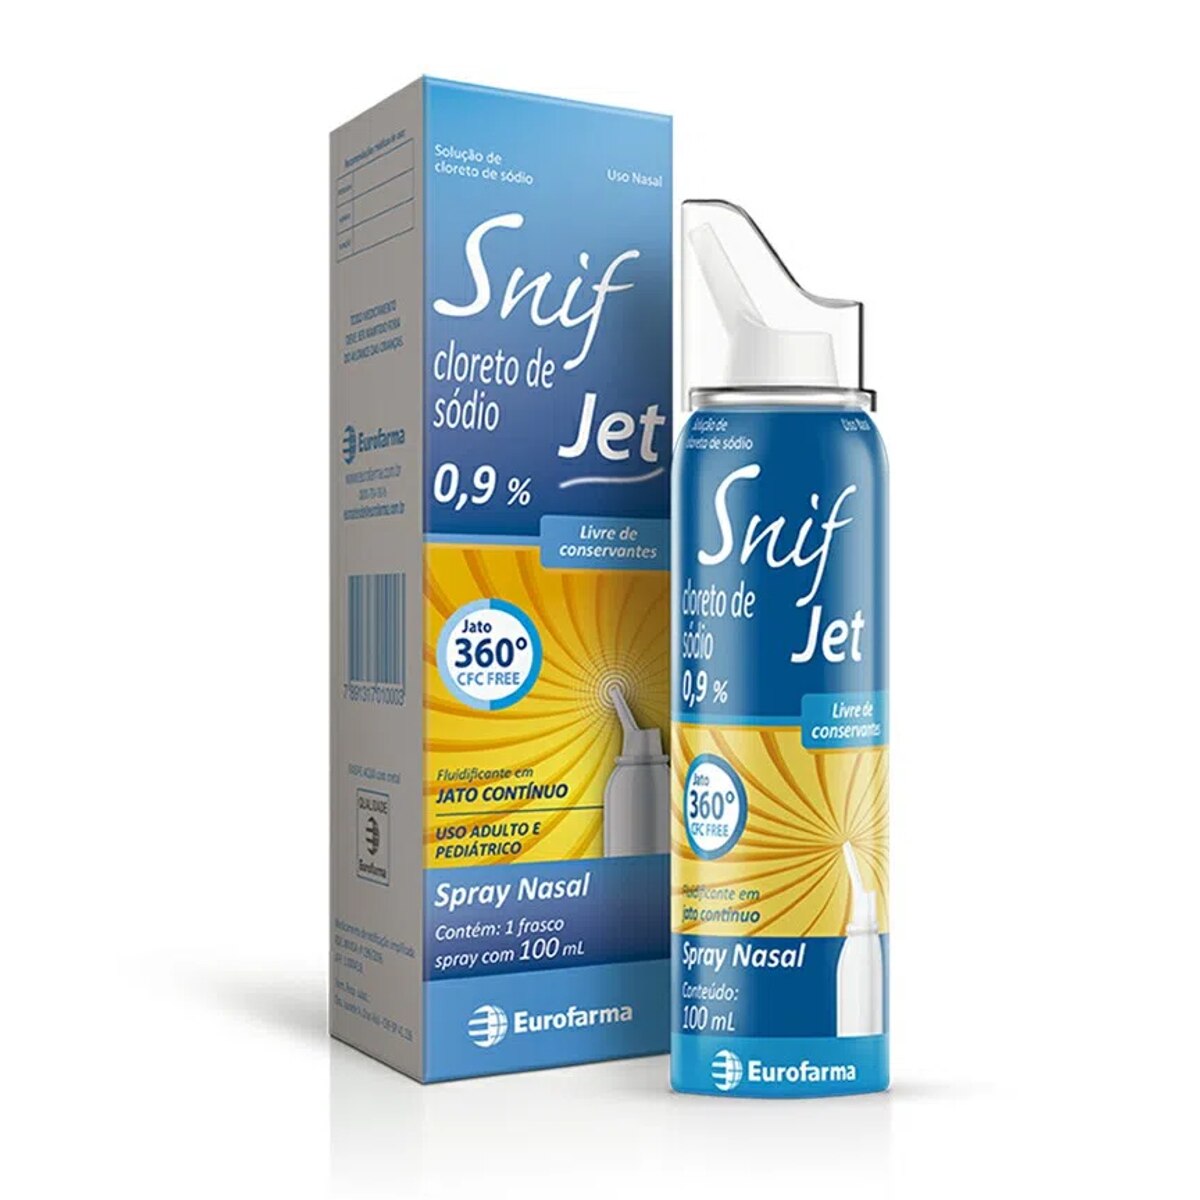 Snif Jet 0,9% Solucao Spray Nasal 100ml